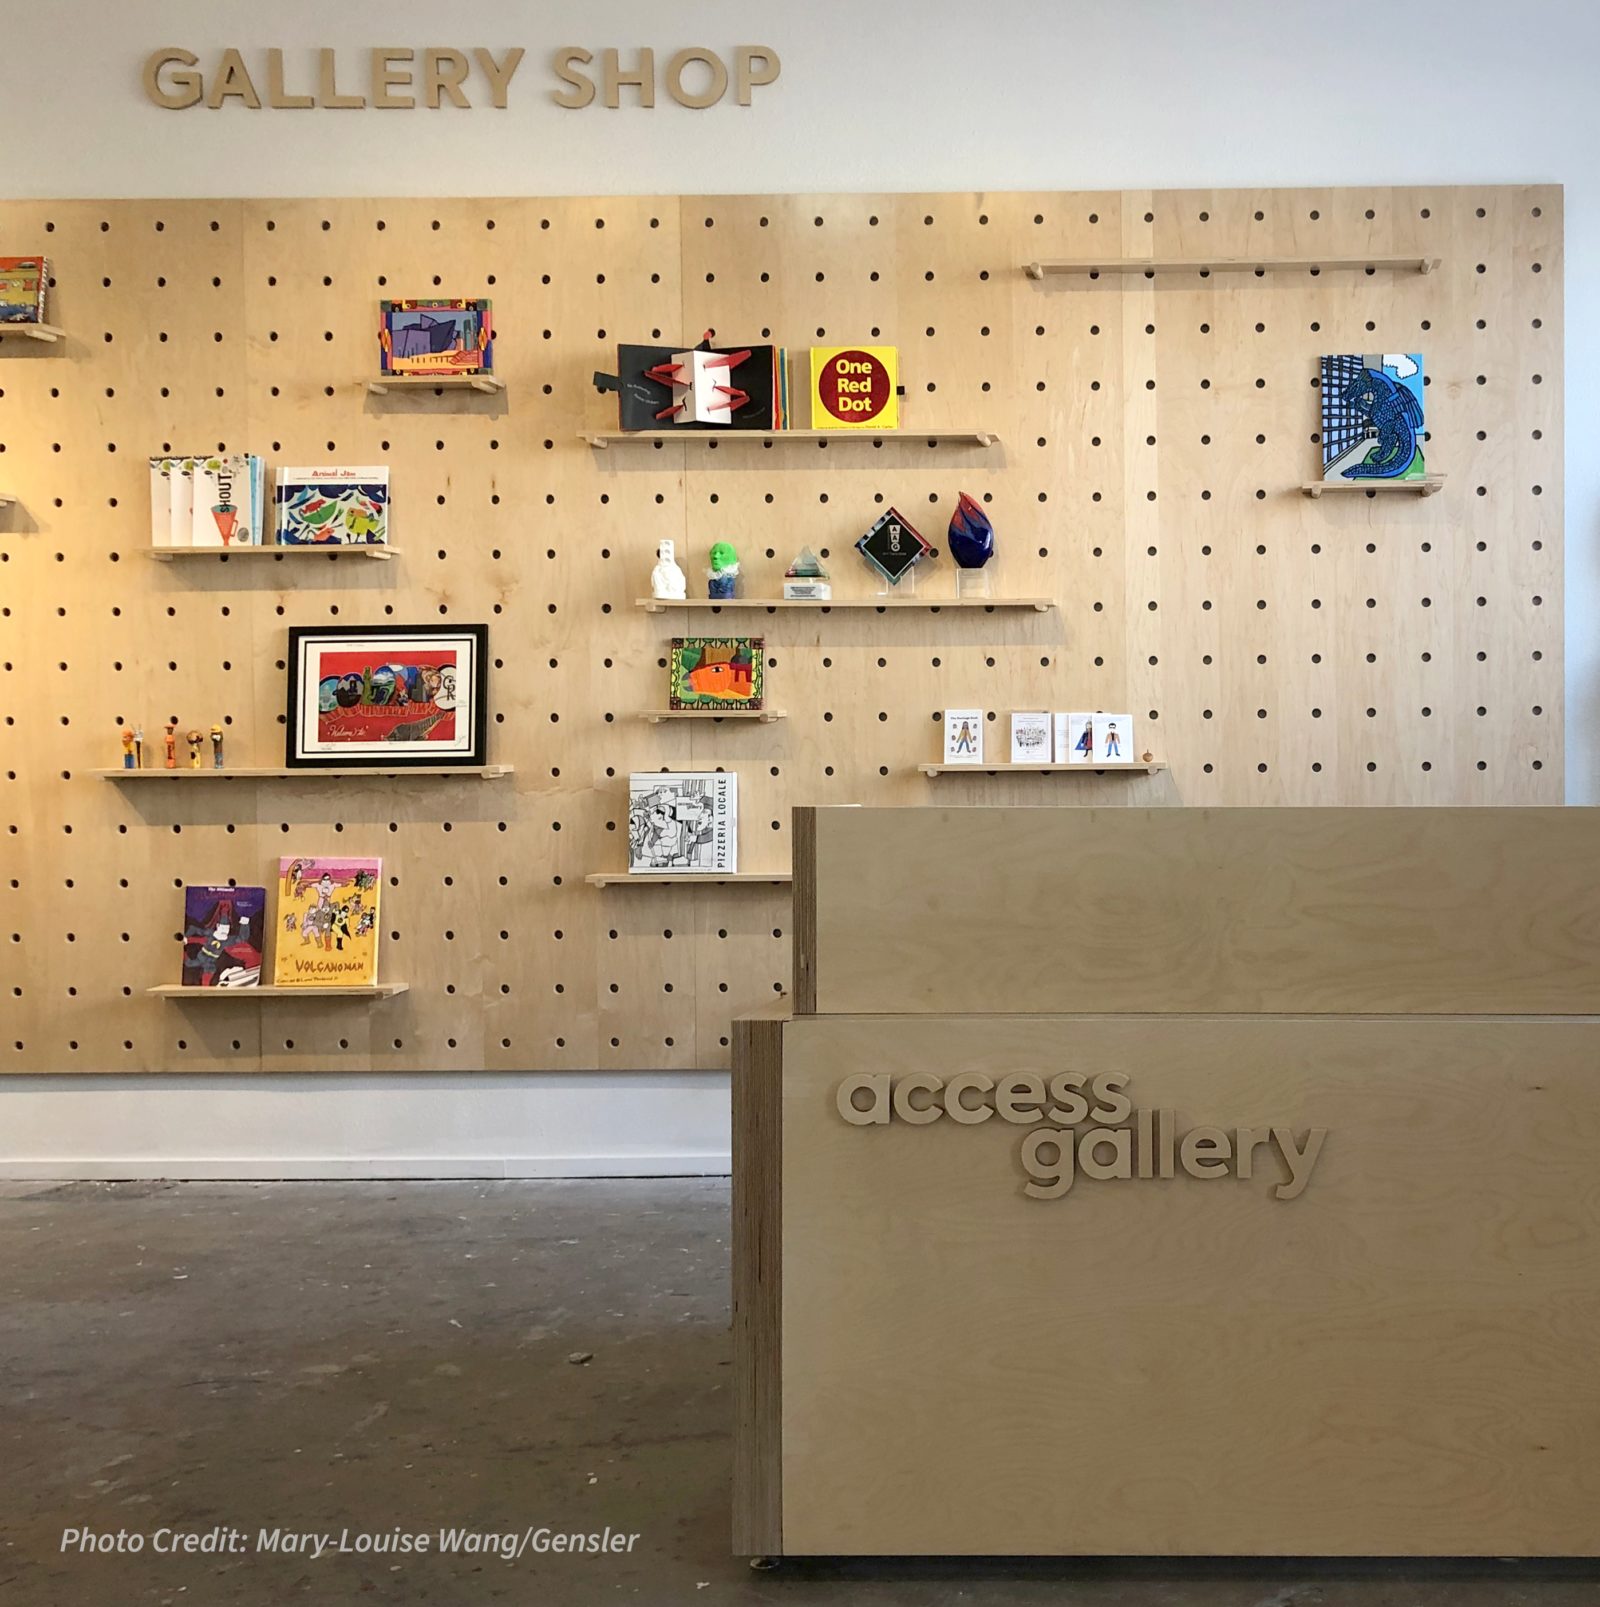 Gallery shop2